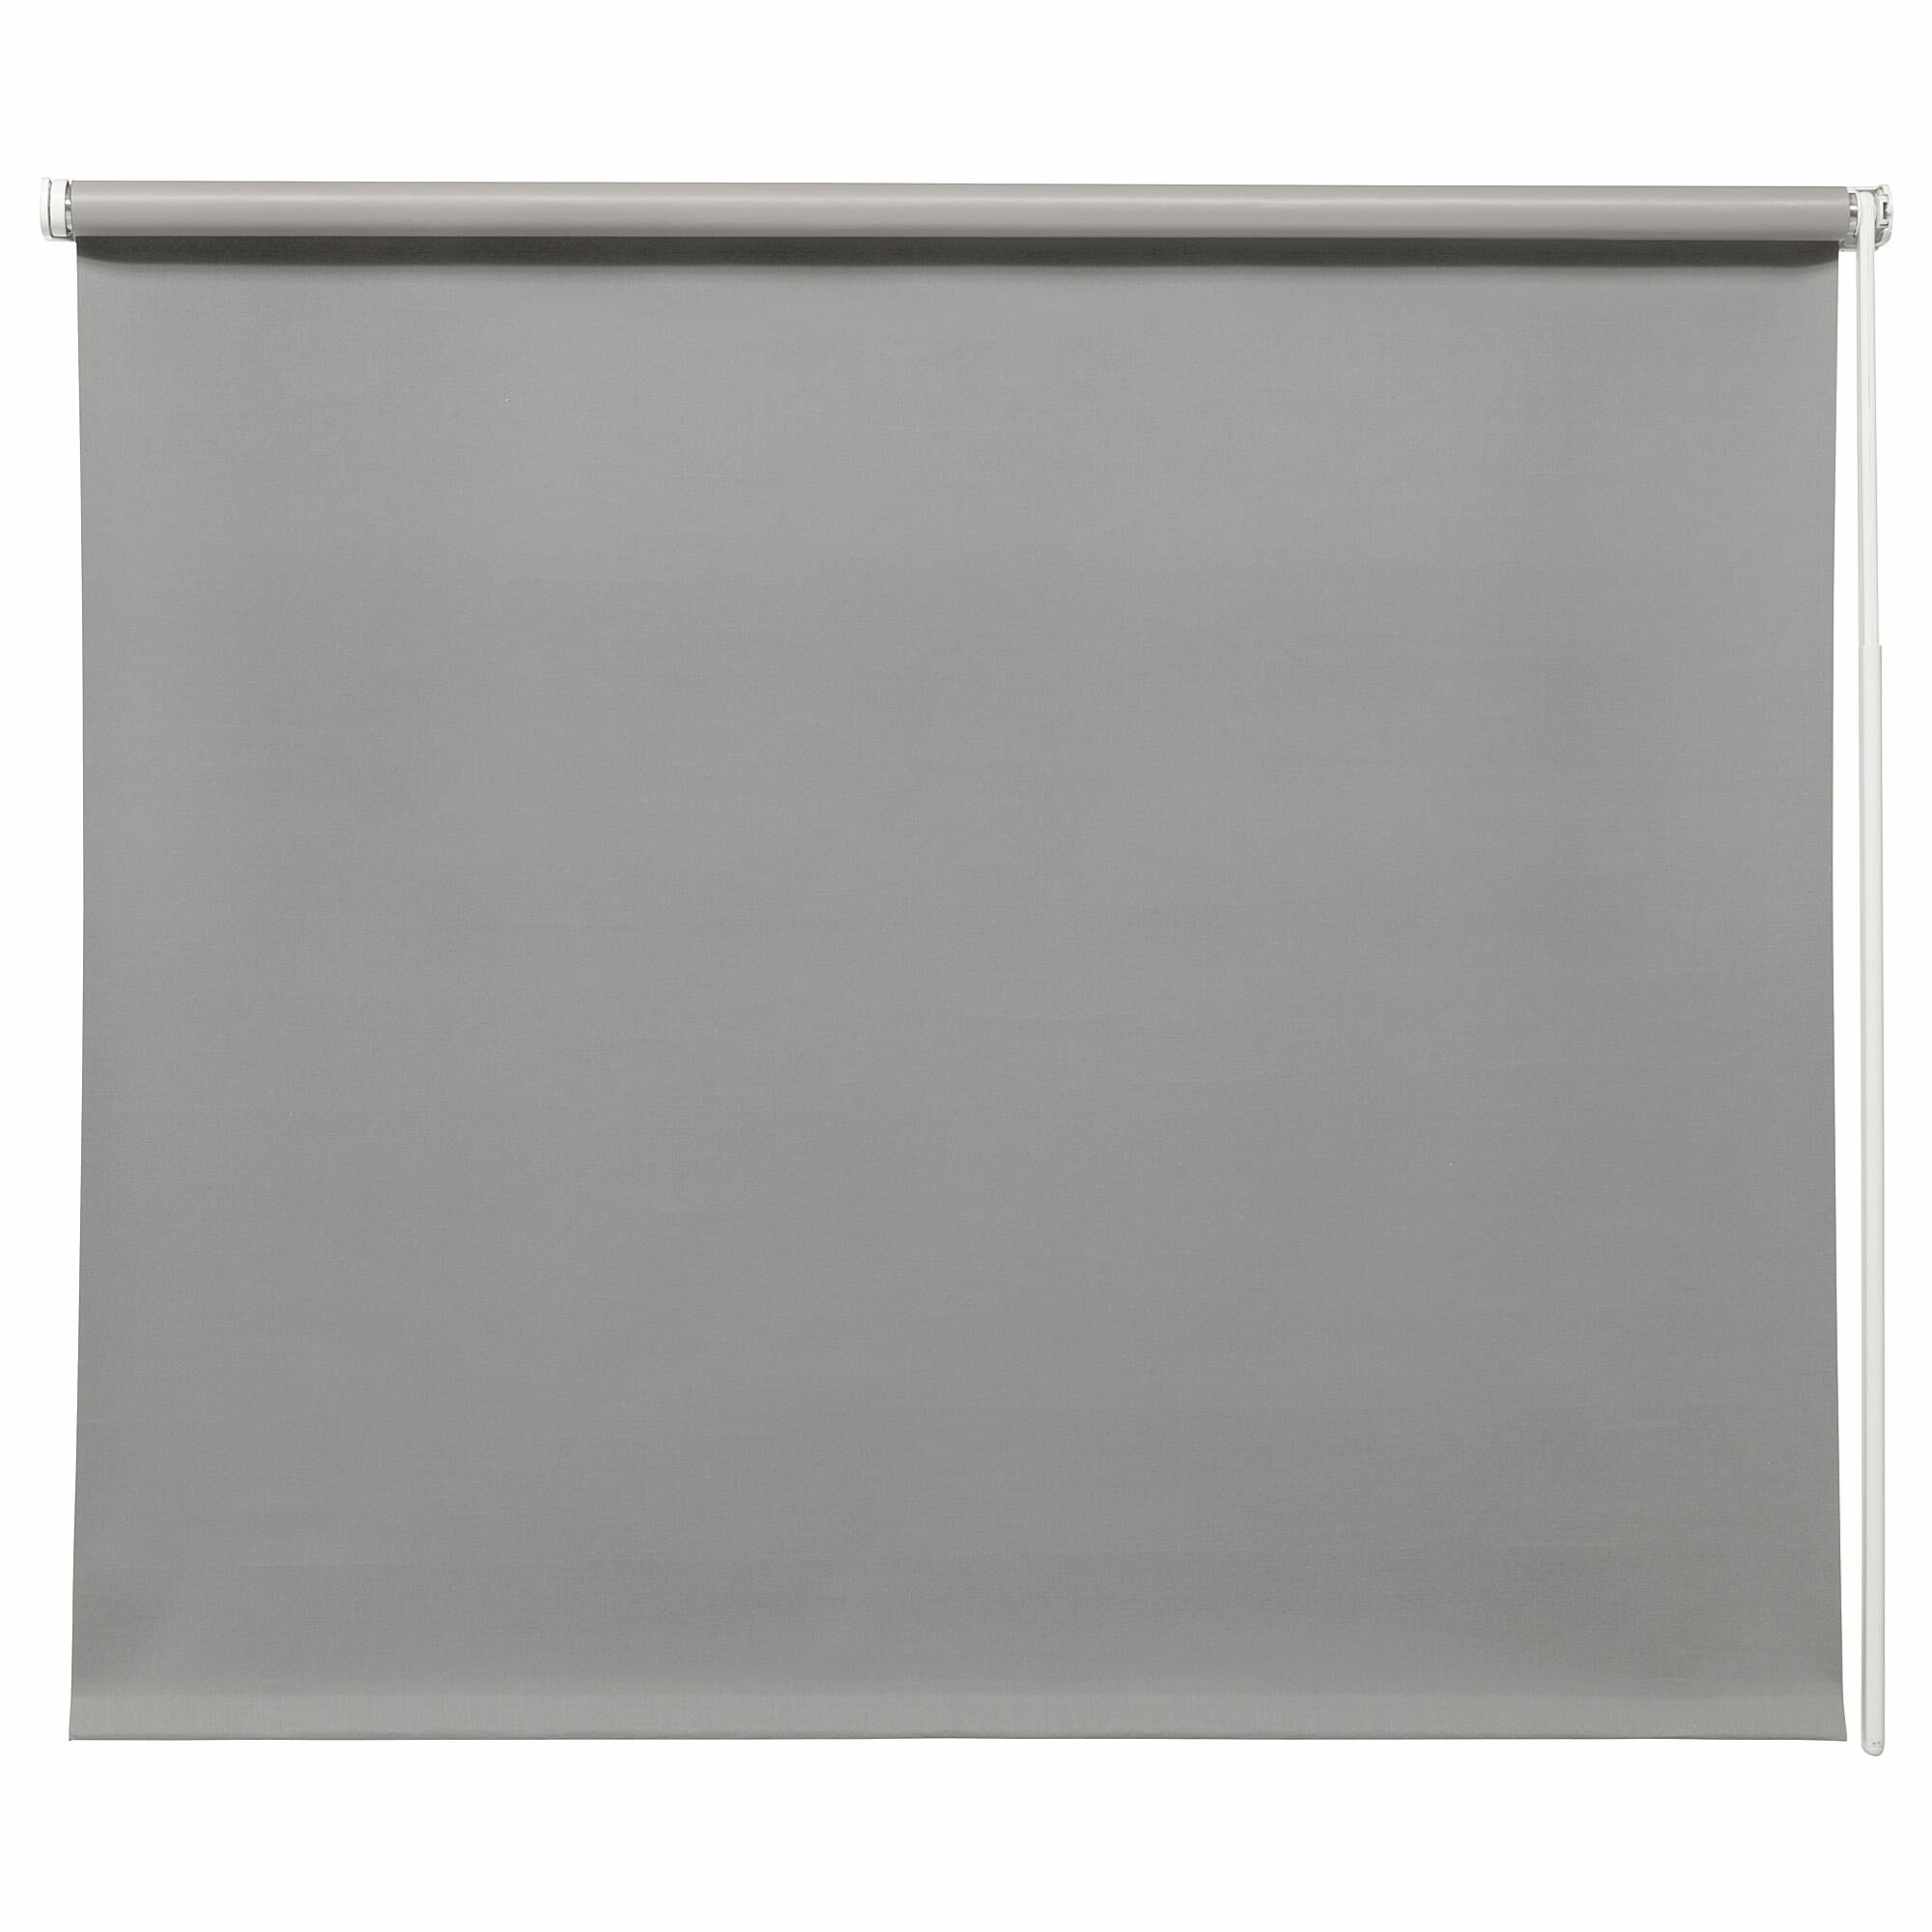 Икея / IKEA FRIDANS, фриданс, рулонные шторы, серый, 120x195 см, непрозрачный